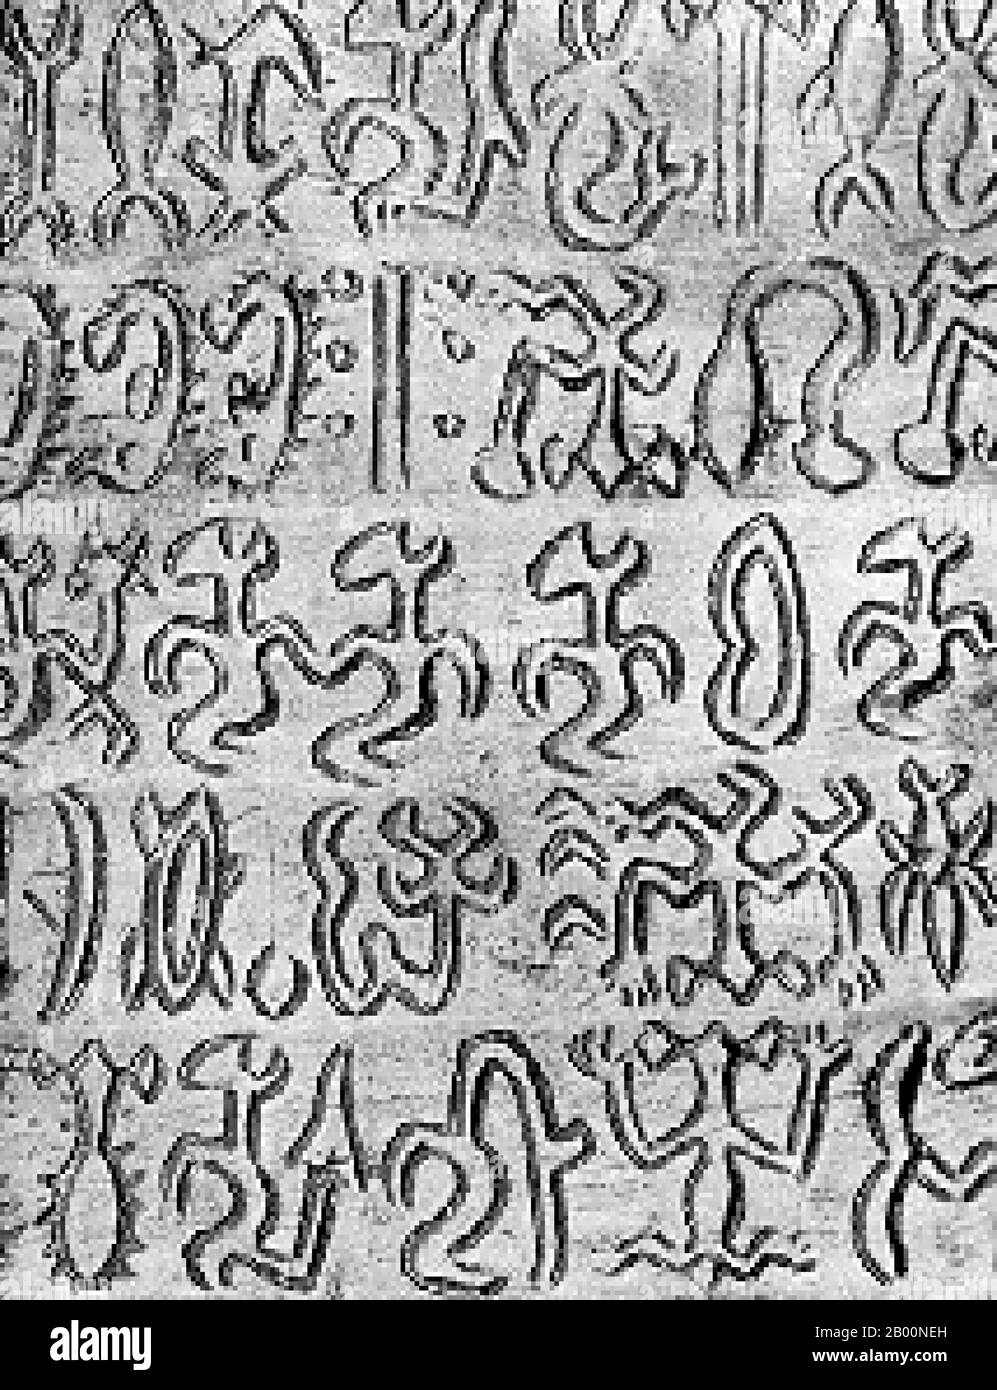 Chile: Die Rongorongo-Schrift der Osterinsel, Rückseite der kleinen Santiago-Tafel. Rongorongo ist ein System von Glyphen, das im 19. Jahrhundert auf Rapa Nui / Osterinsel entdeckt wurde und das zu schreiben oder zu schreiben scheint. Zahlreiche Versuche zur Entschlüsselung wurden gemacht, keine erfolgreich. Obwohl einige kalendarische und was könnte sich als genealogische Informationen identifiziert wurde, nicht einmal diese Glyphen können tatsächlich gelesen werden. Wenn Rongorongo nicht als Schreiben erweisen und erweist sich als eine unabhängige Erfindung, wäre es eine von sehr wenigen unabhängigen Erfindungen des Schreibens in der menschlichen Geschichte. Stockfoto